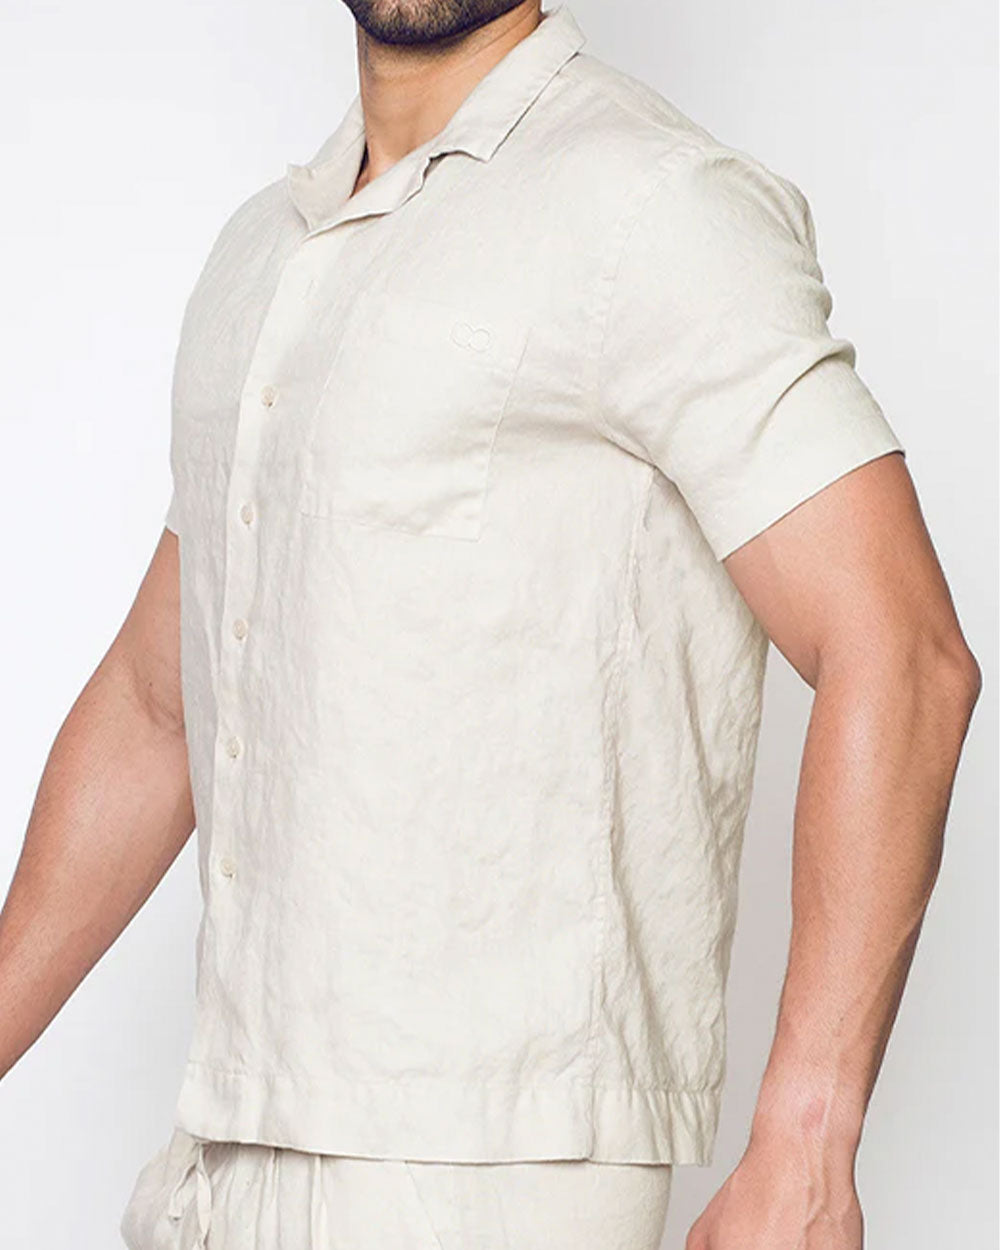 Breezy Linen Short Sleeve Classic Shirt